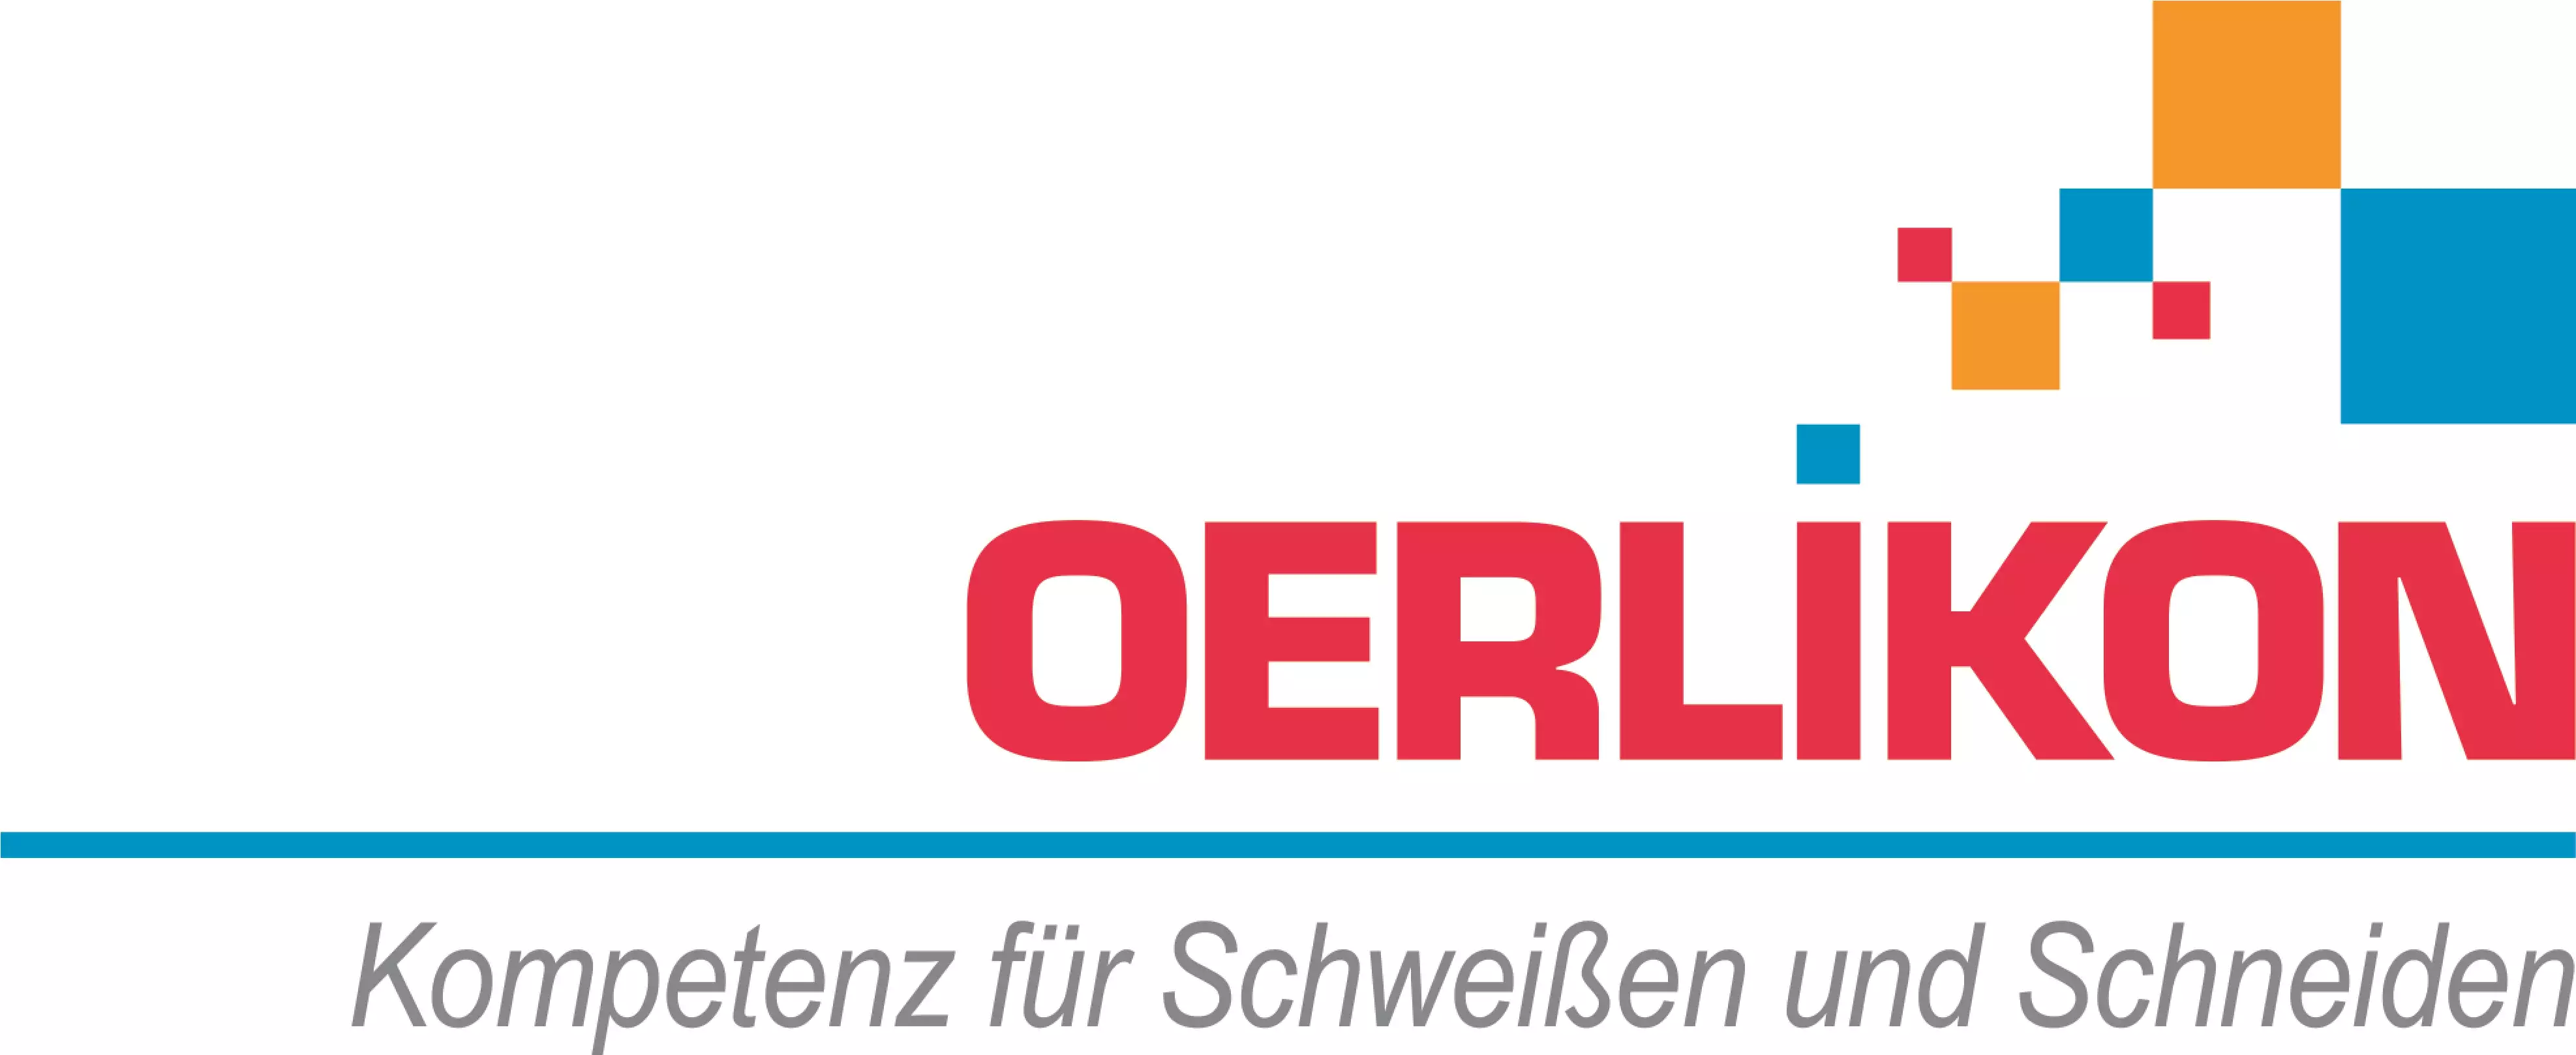 Logo de la marque Oerlikon